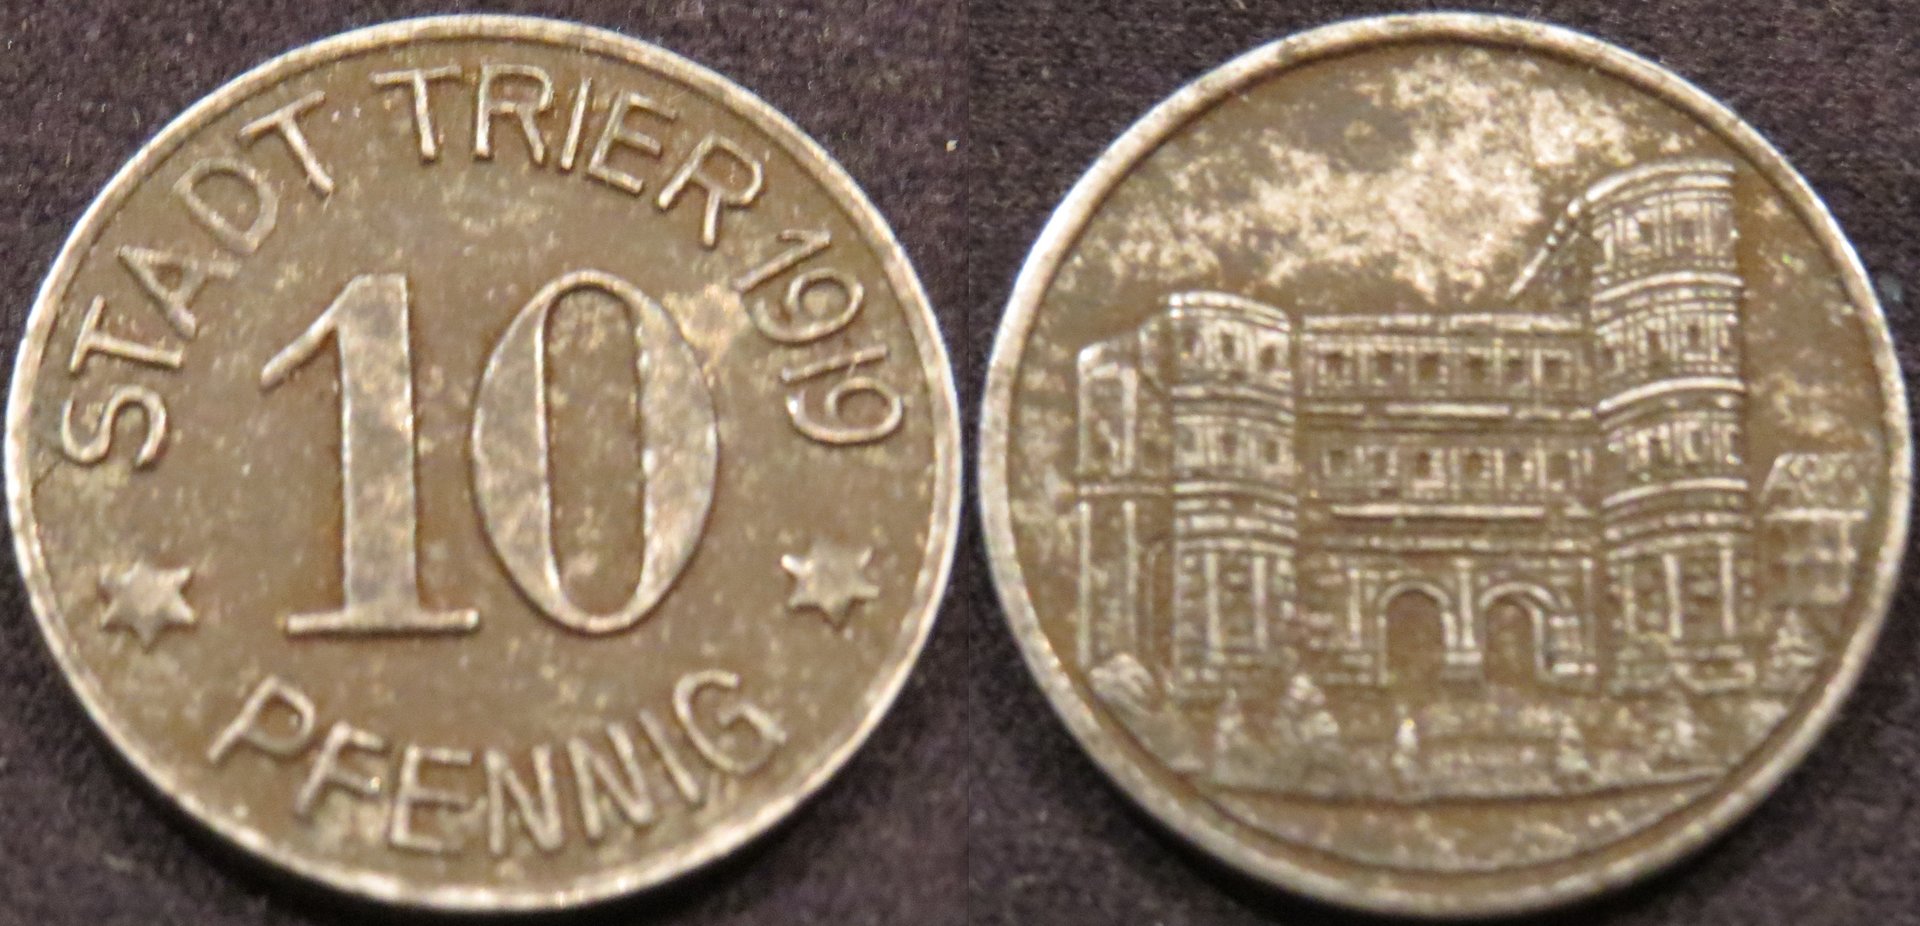 Trier 1919 10 Pfennig.jpeg